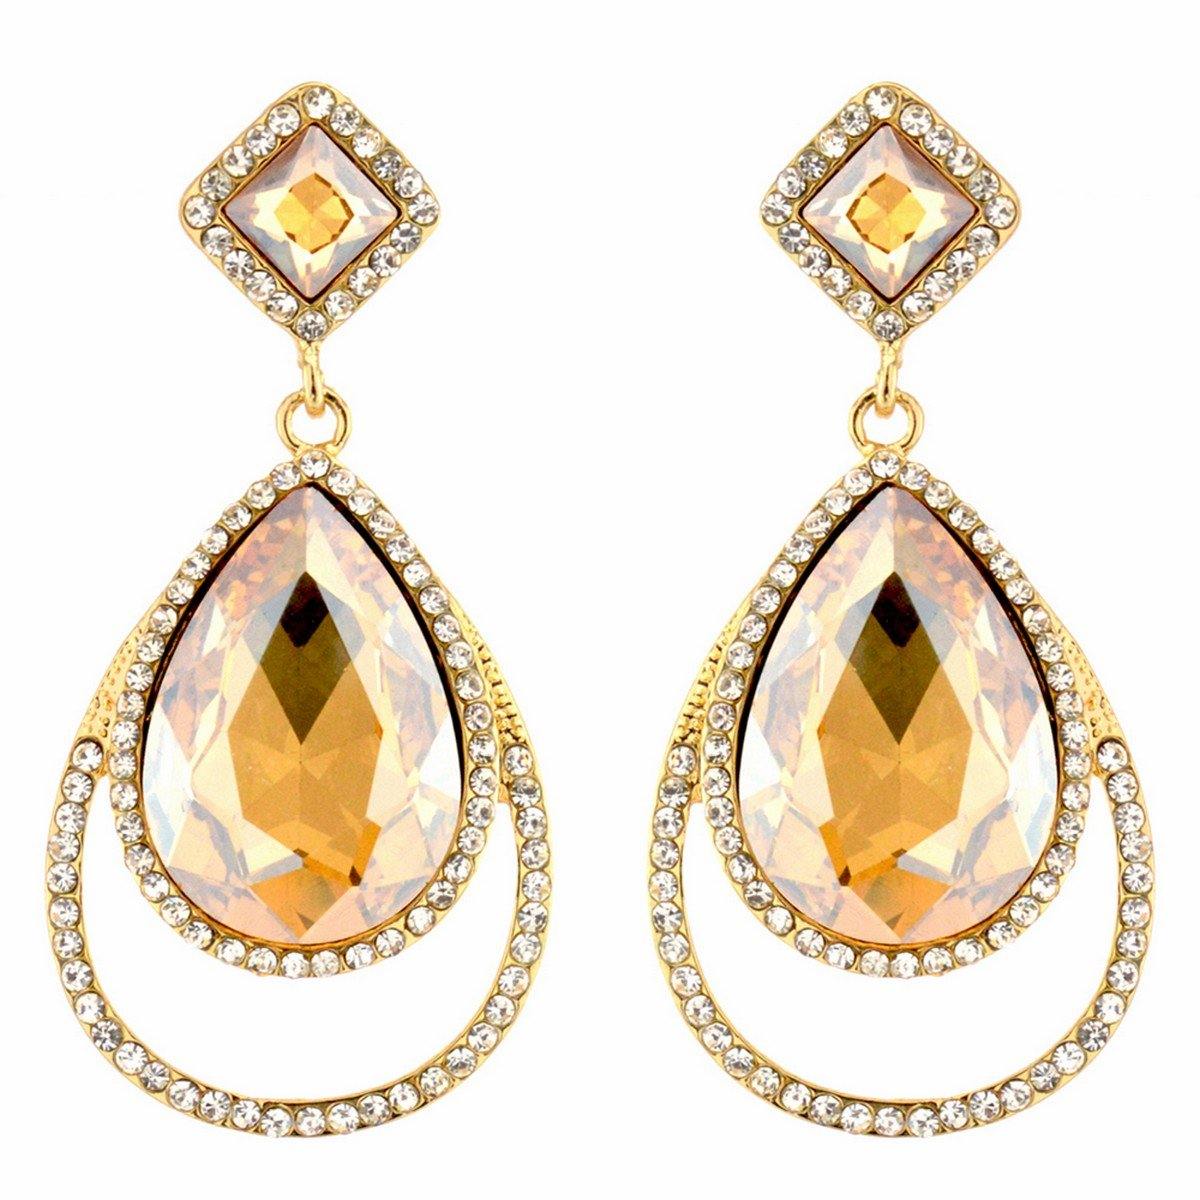 Clear Diamante Teardrop Shaped Rhinestone Earrings - The Dress Outlet